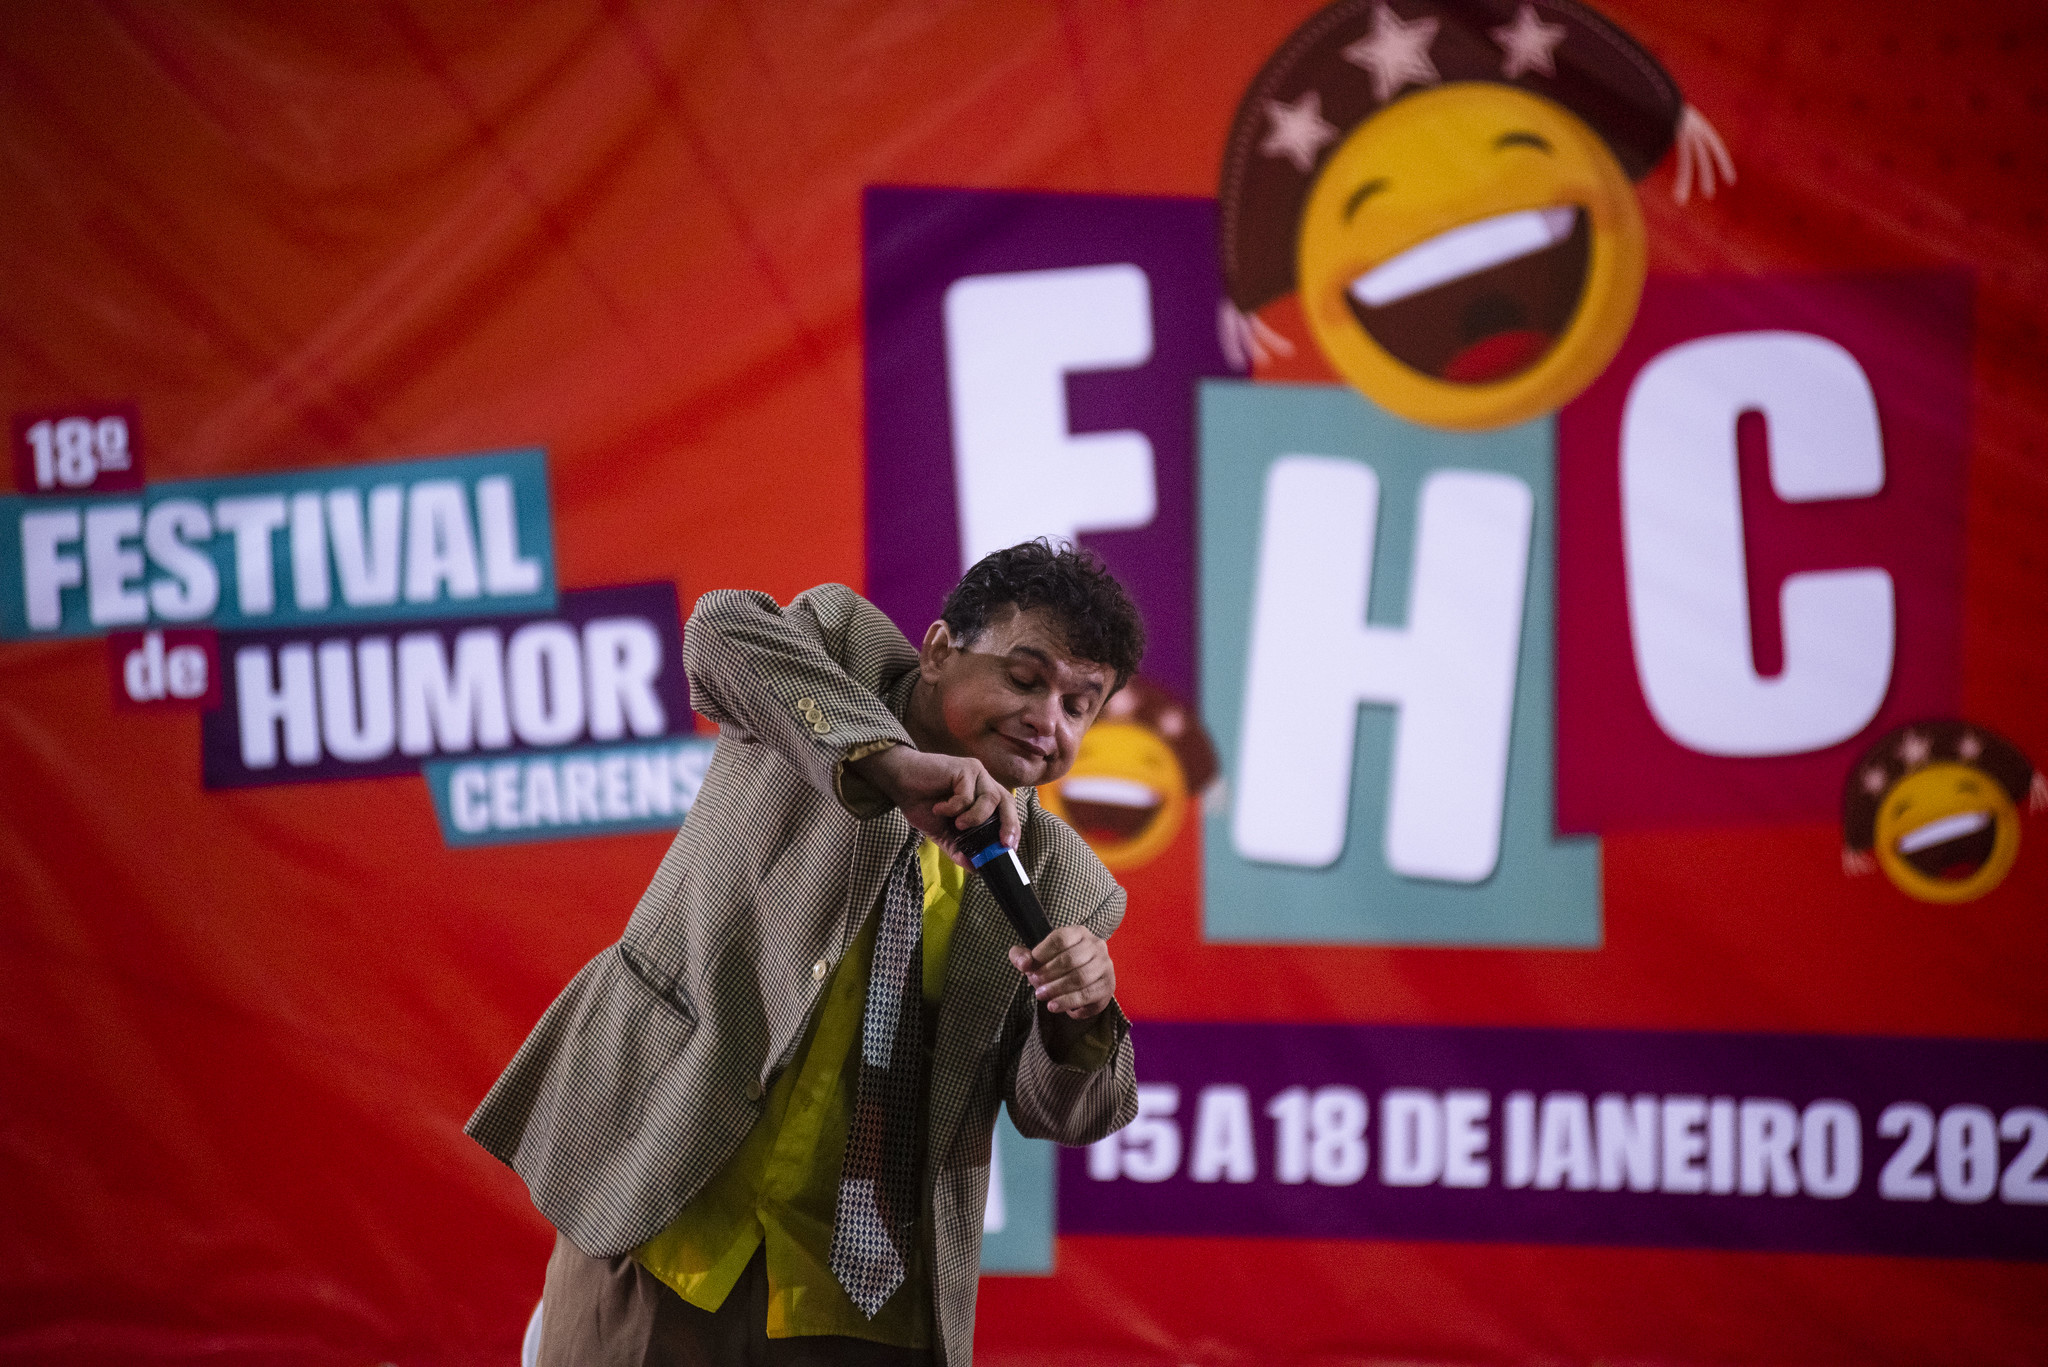 Festival de Humor Cearense: Um homem de terno se apresenta em frente a um banner onde se lê "Festival do Humor Cearense"